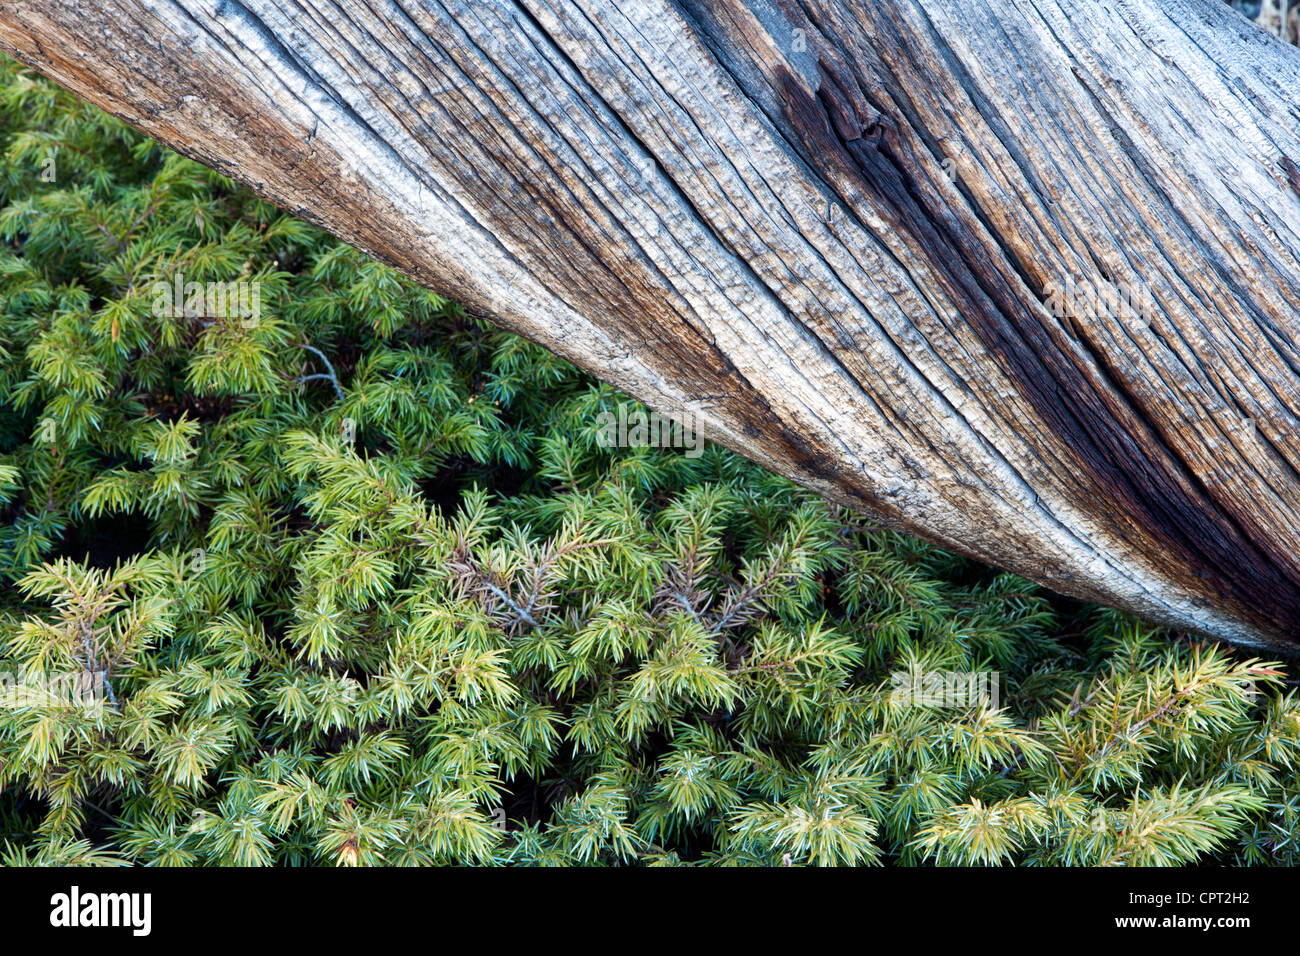 L'écorce des arbres Patterns - Rocky Mountain National Park - Estes Park, Colorado USA Banque D'Images